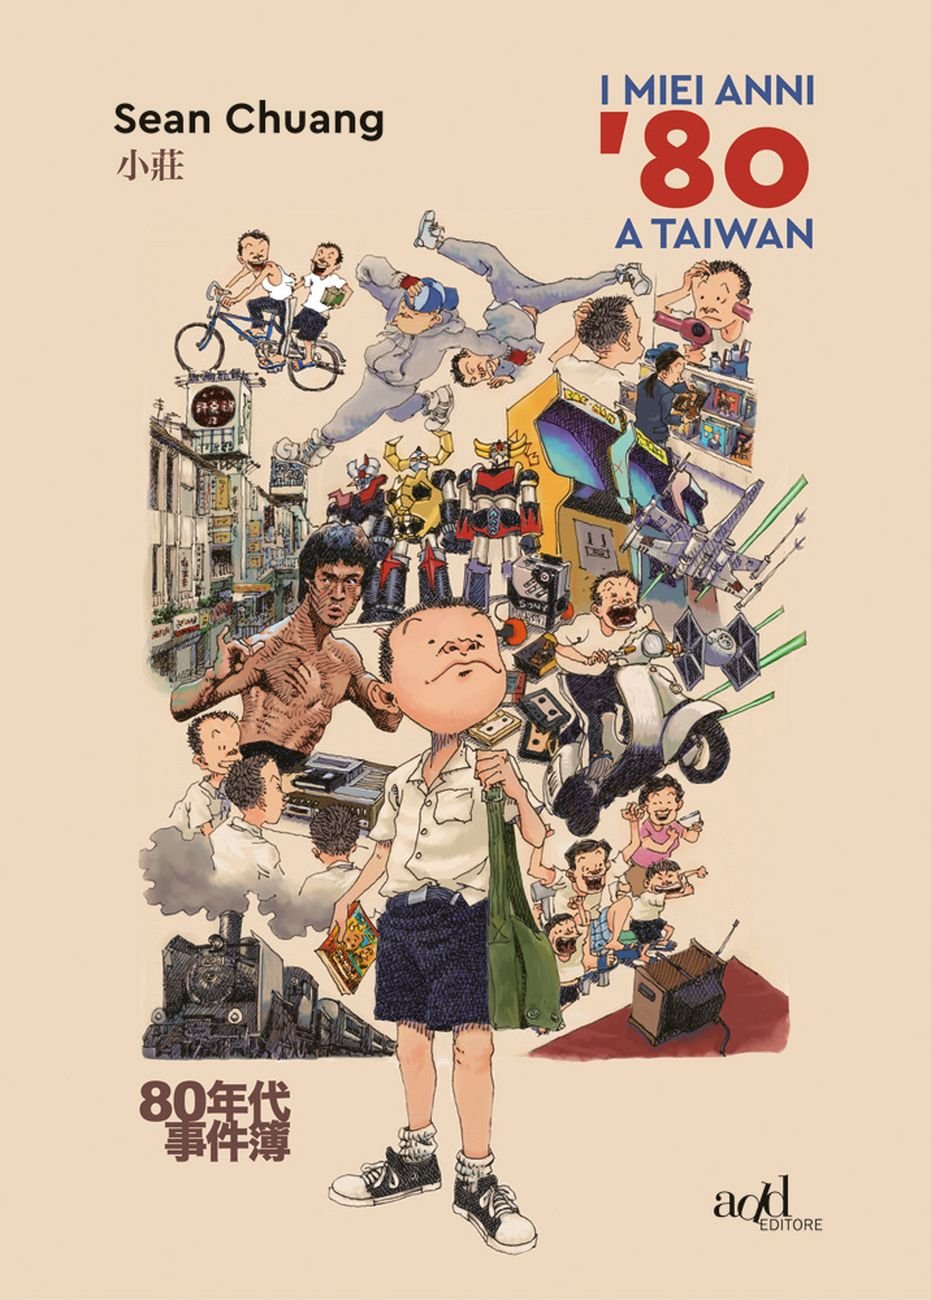 Sean Chuang, I miei anni '80 a Taiwan (Add Editore, 2018)